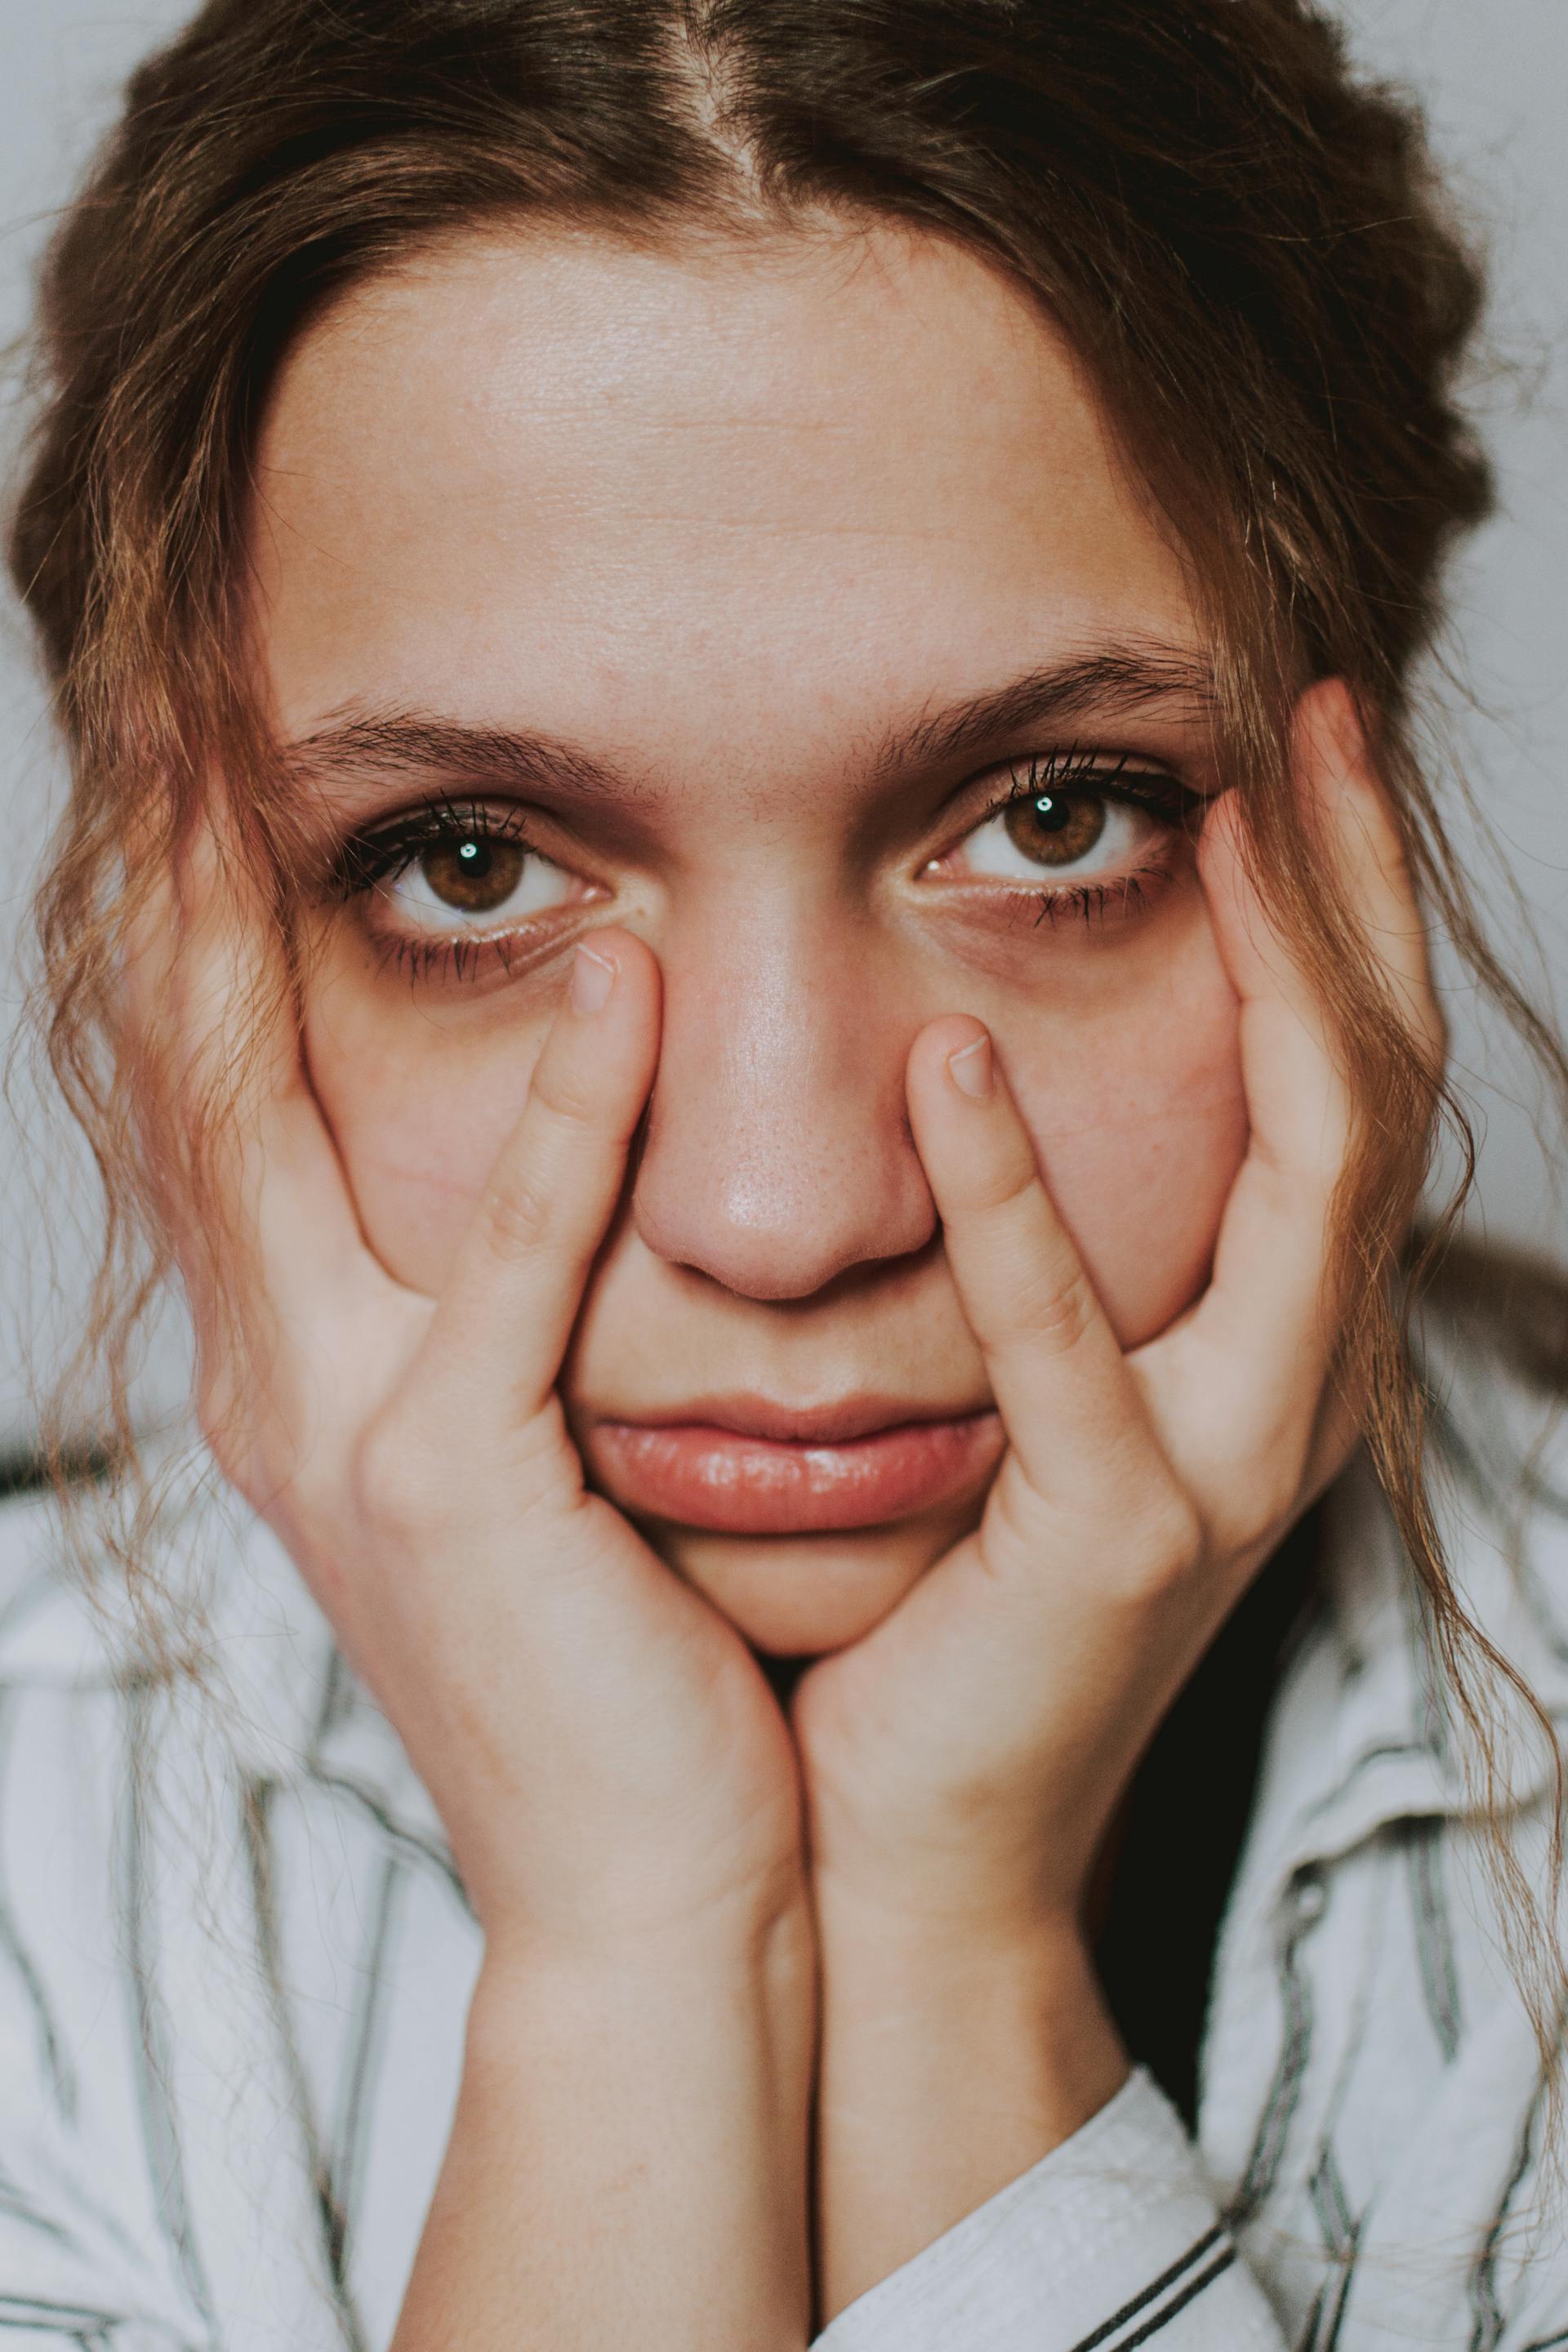 Una mujer estresada | Fuente: Pexels